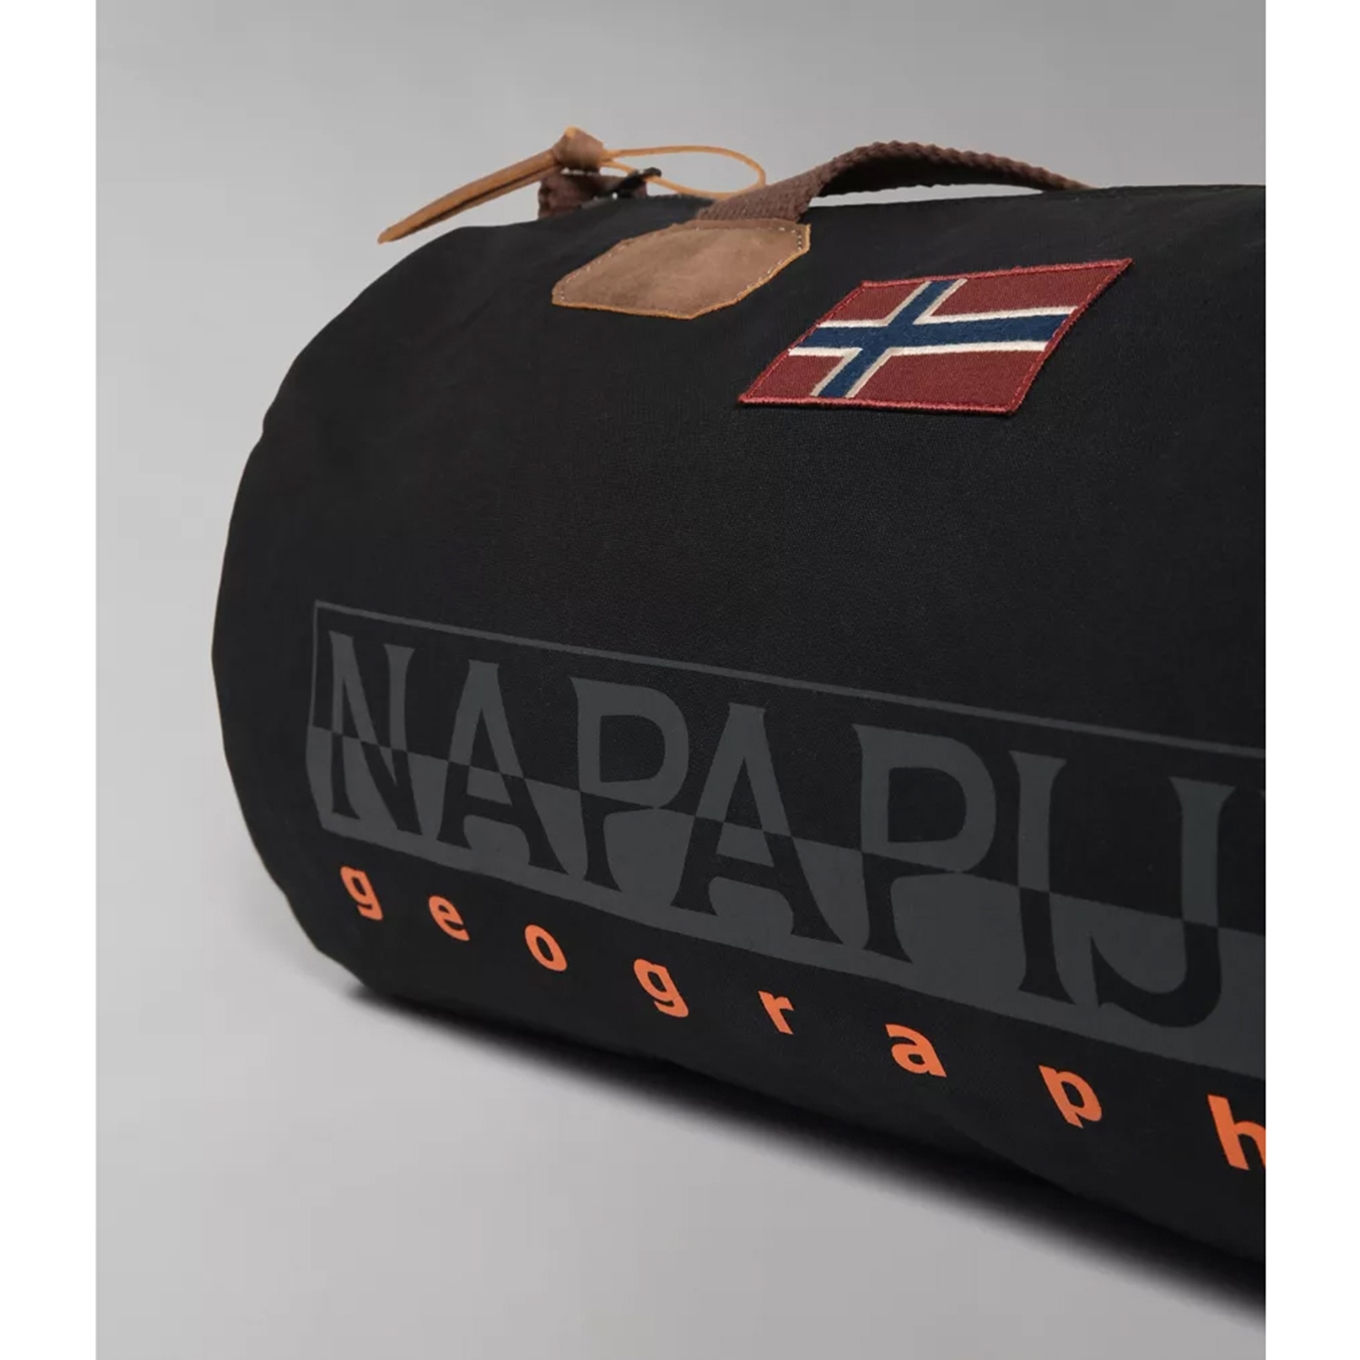 Onophoudelijk vieren Lunch Napapijri Bering Travelbag S black | Travelbags.be